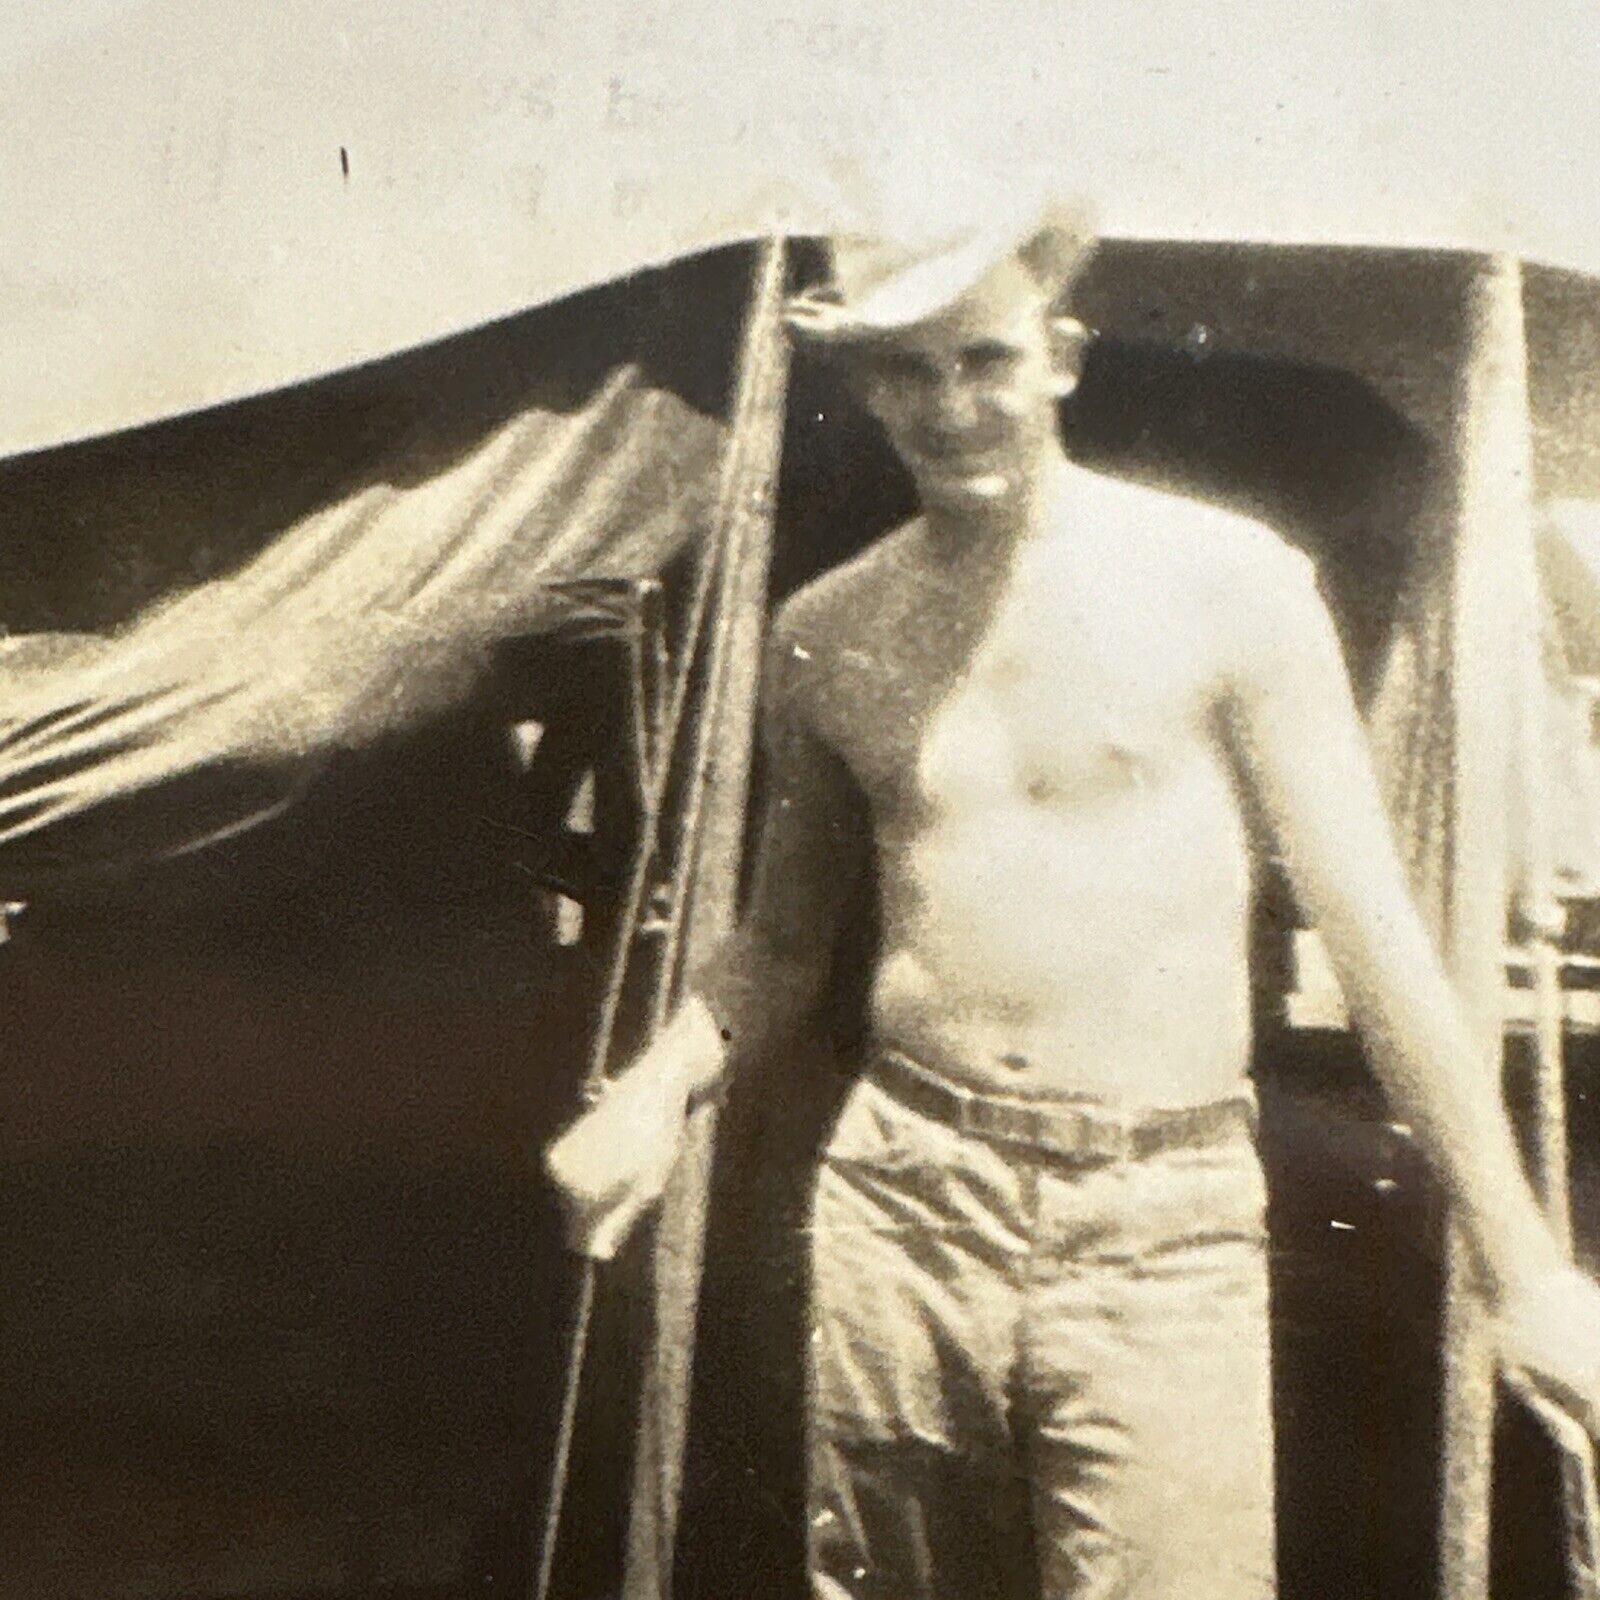 VINTAGE PHOTO shirtless Man In cowboy hat 1940s gay interest Original Snapshot